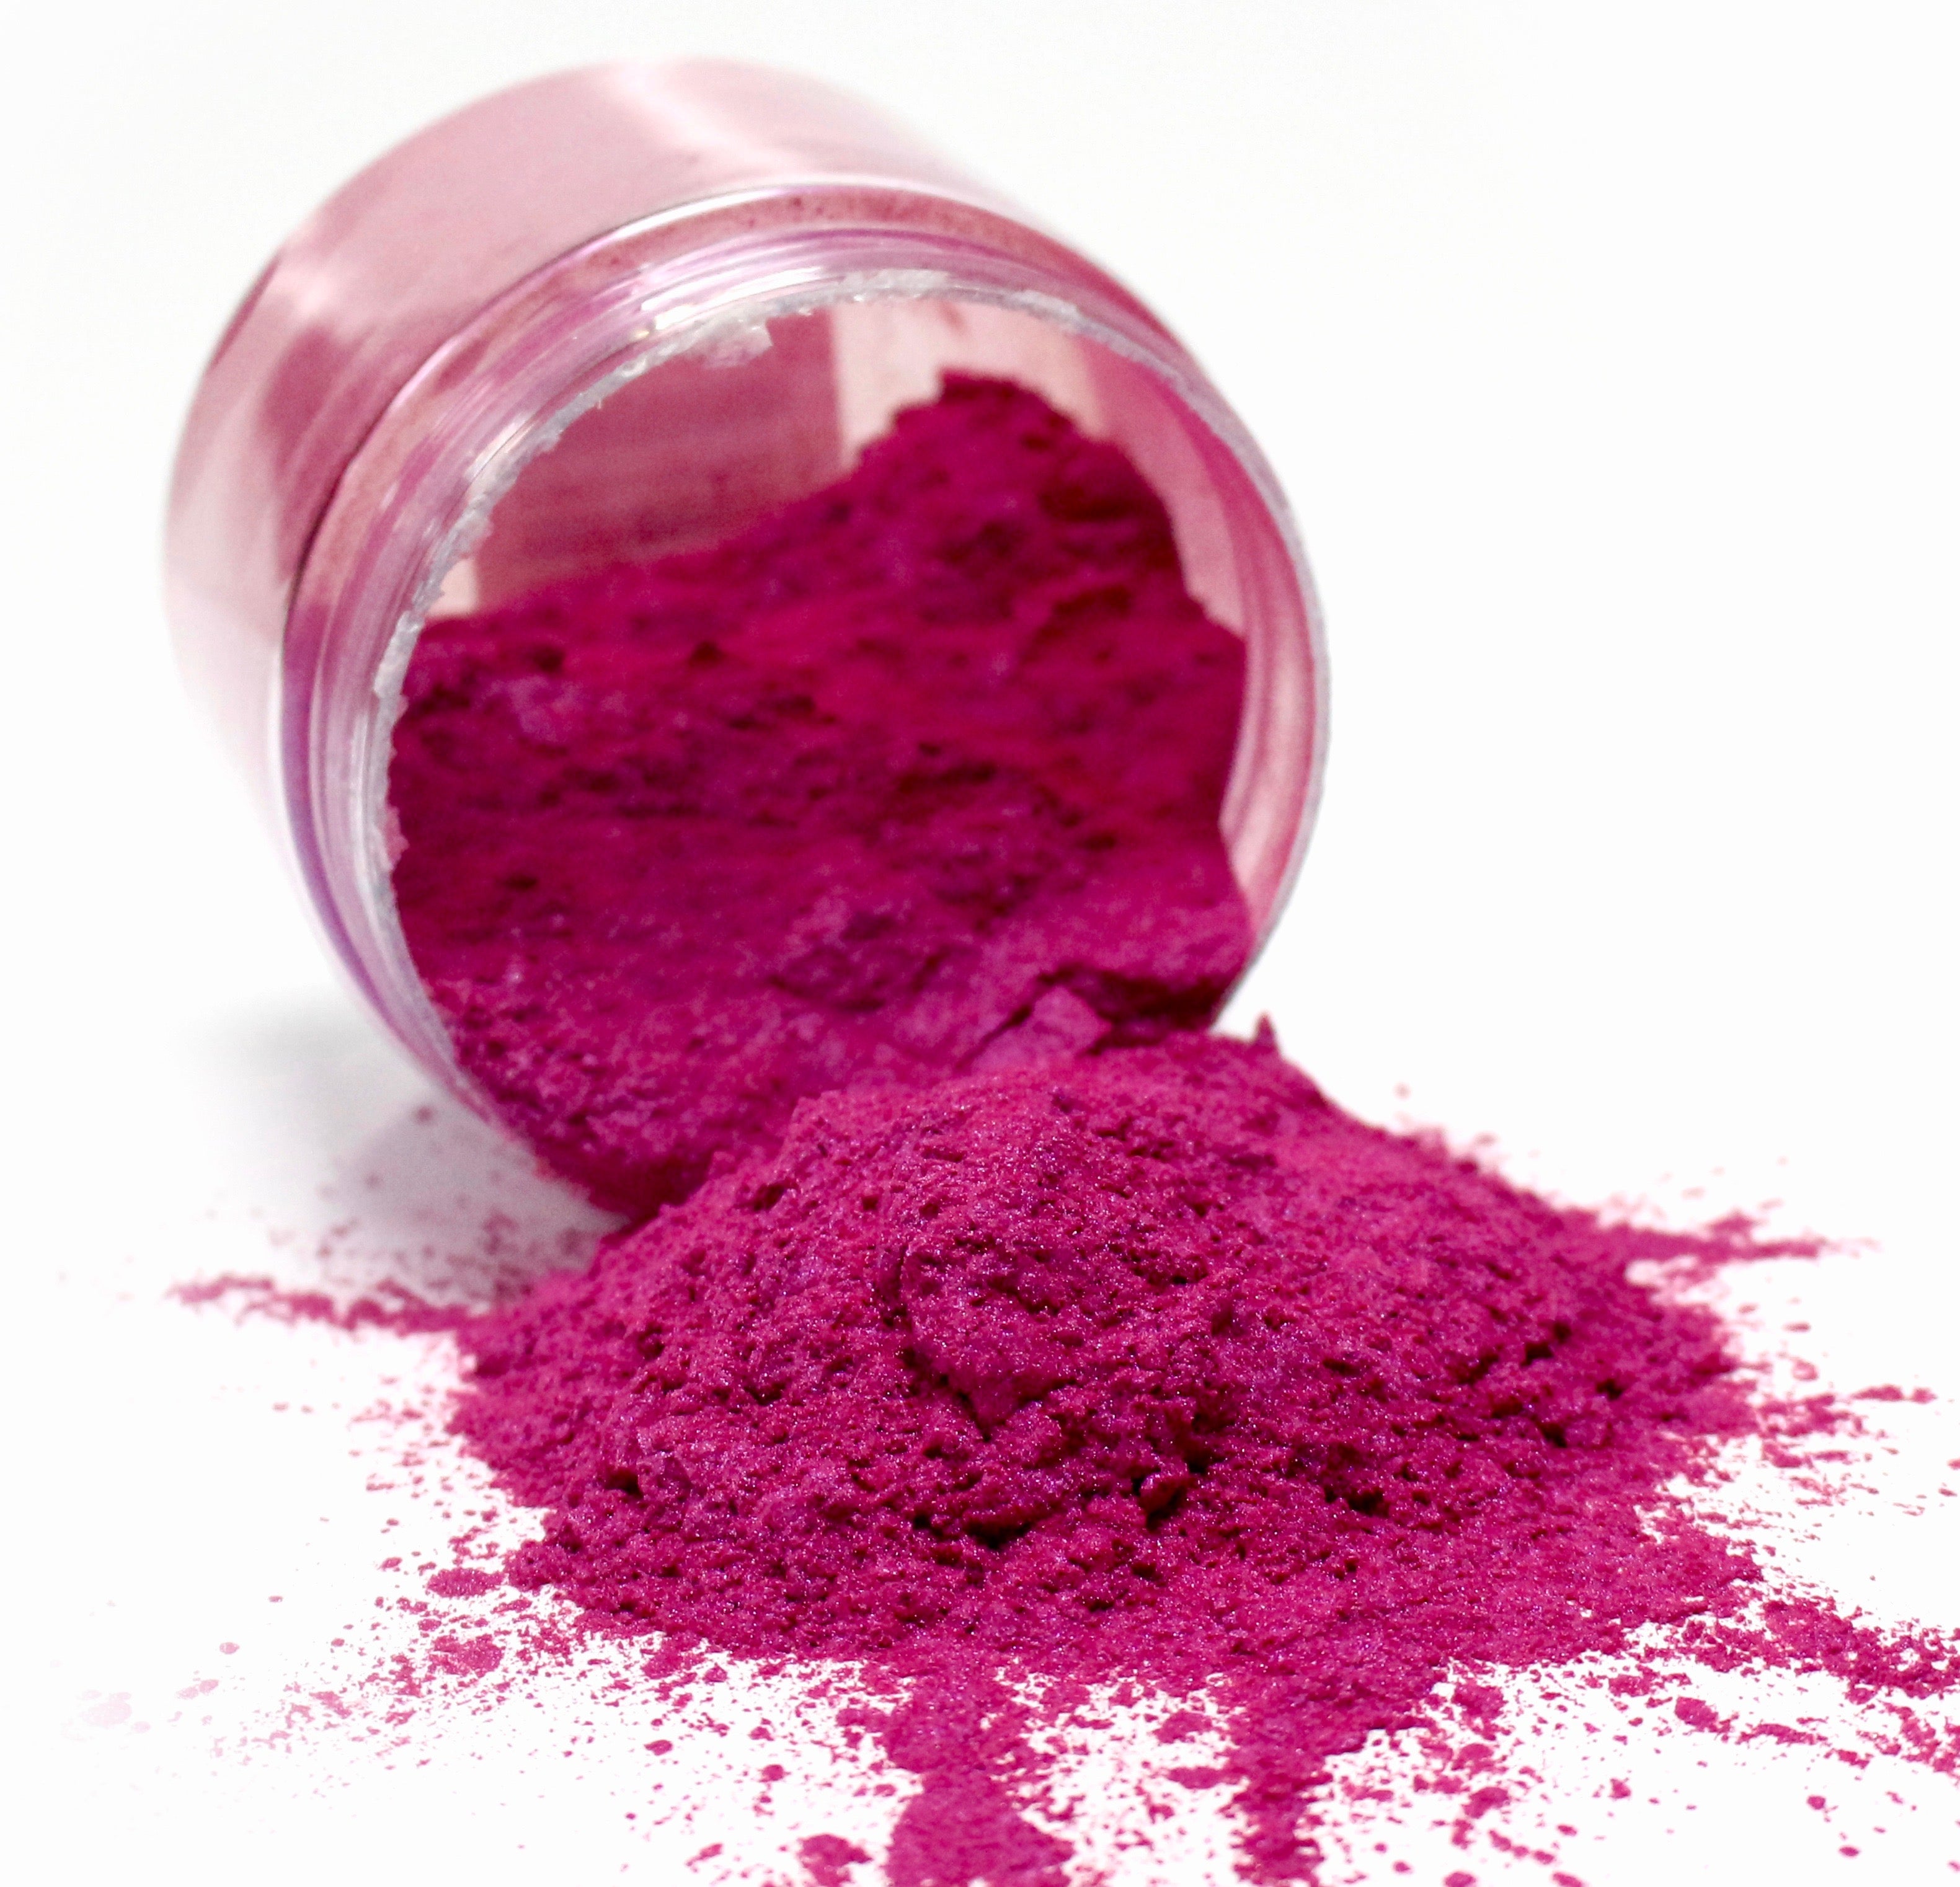 Matte Black - Professional grade mica powder pigment – The Epoxy